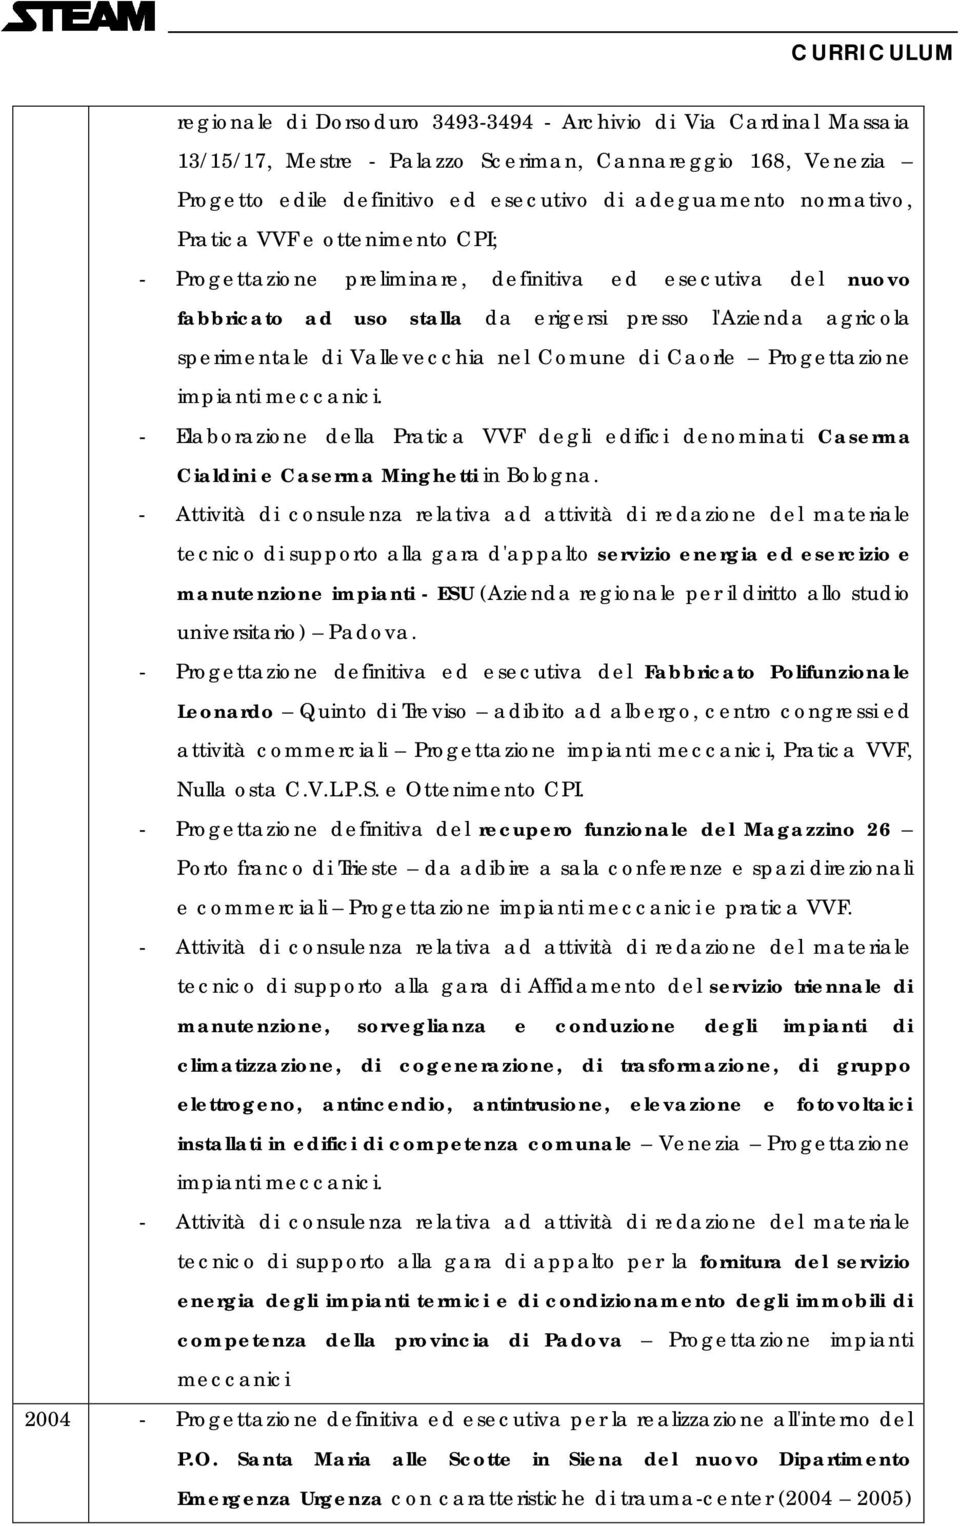 Caorle Progettazione impianti meccanici. - Elaborazione della Pratica VVF degli edifici denominati Caserma Cialdini e Caserma Minghetti in Bologna.